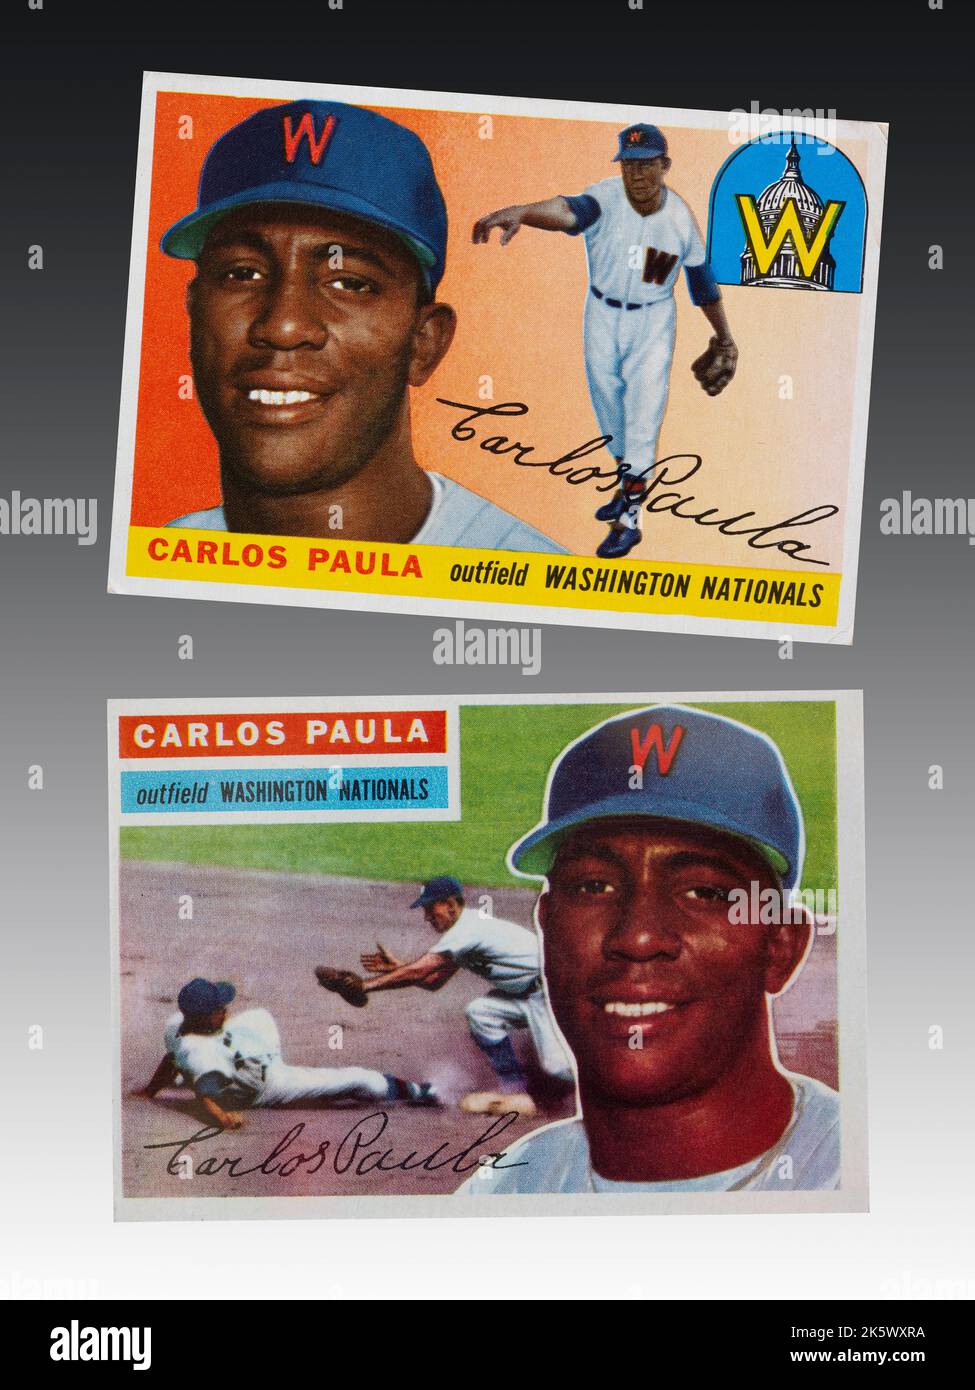 1955 et 1956 Washington nationaux de baseball cartes de l'outfielder Carlos Paula - sur 6 septembre 1954 Carlos Paula Conill est devenu le premier joueur noir Banque D'Images